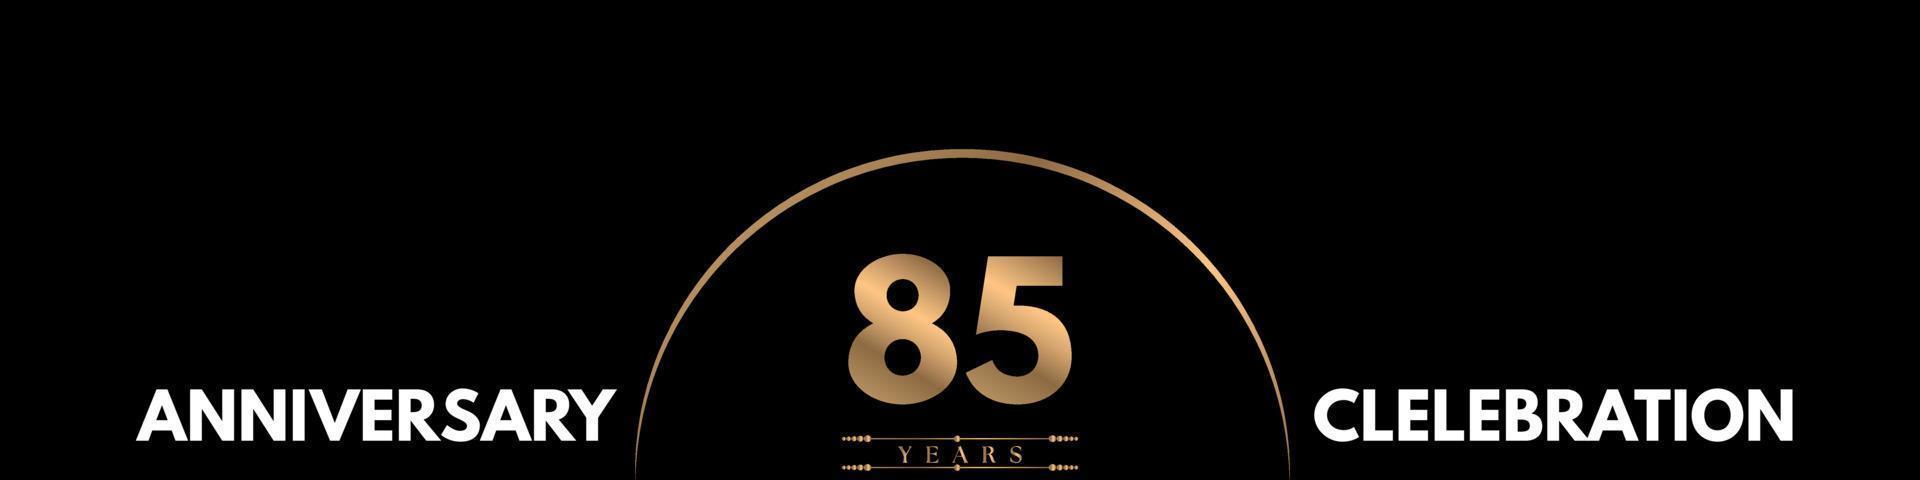 Celebración del aniversario de 85 años con un número elegante aislado en fondo negro. diseño vectorial para tarjeta de felicitación, fiesta de cumpleaños, boda, fiesta, ceremonia, tarjeta de invitación. vector